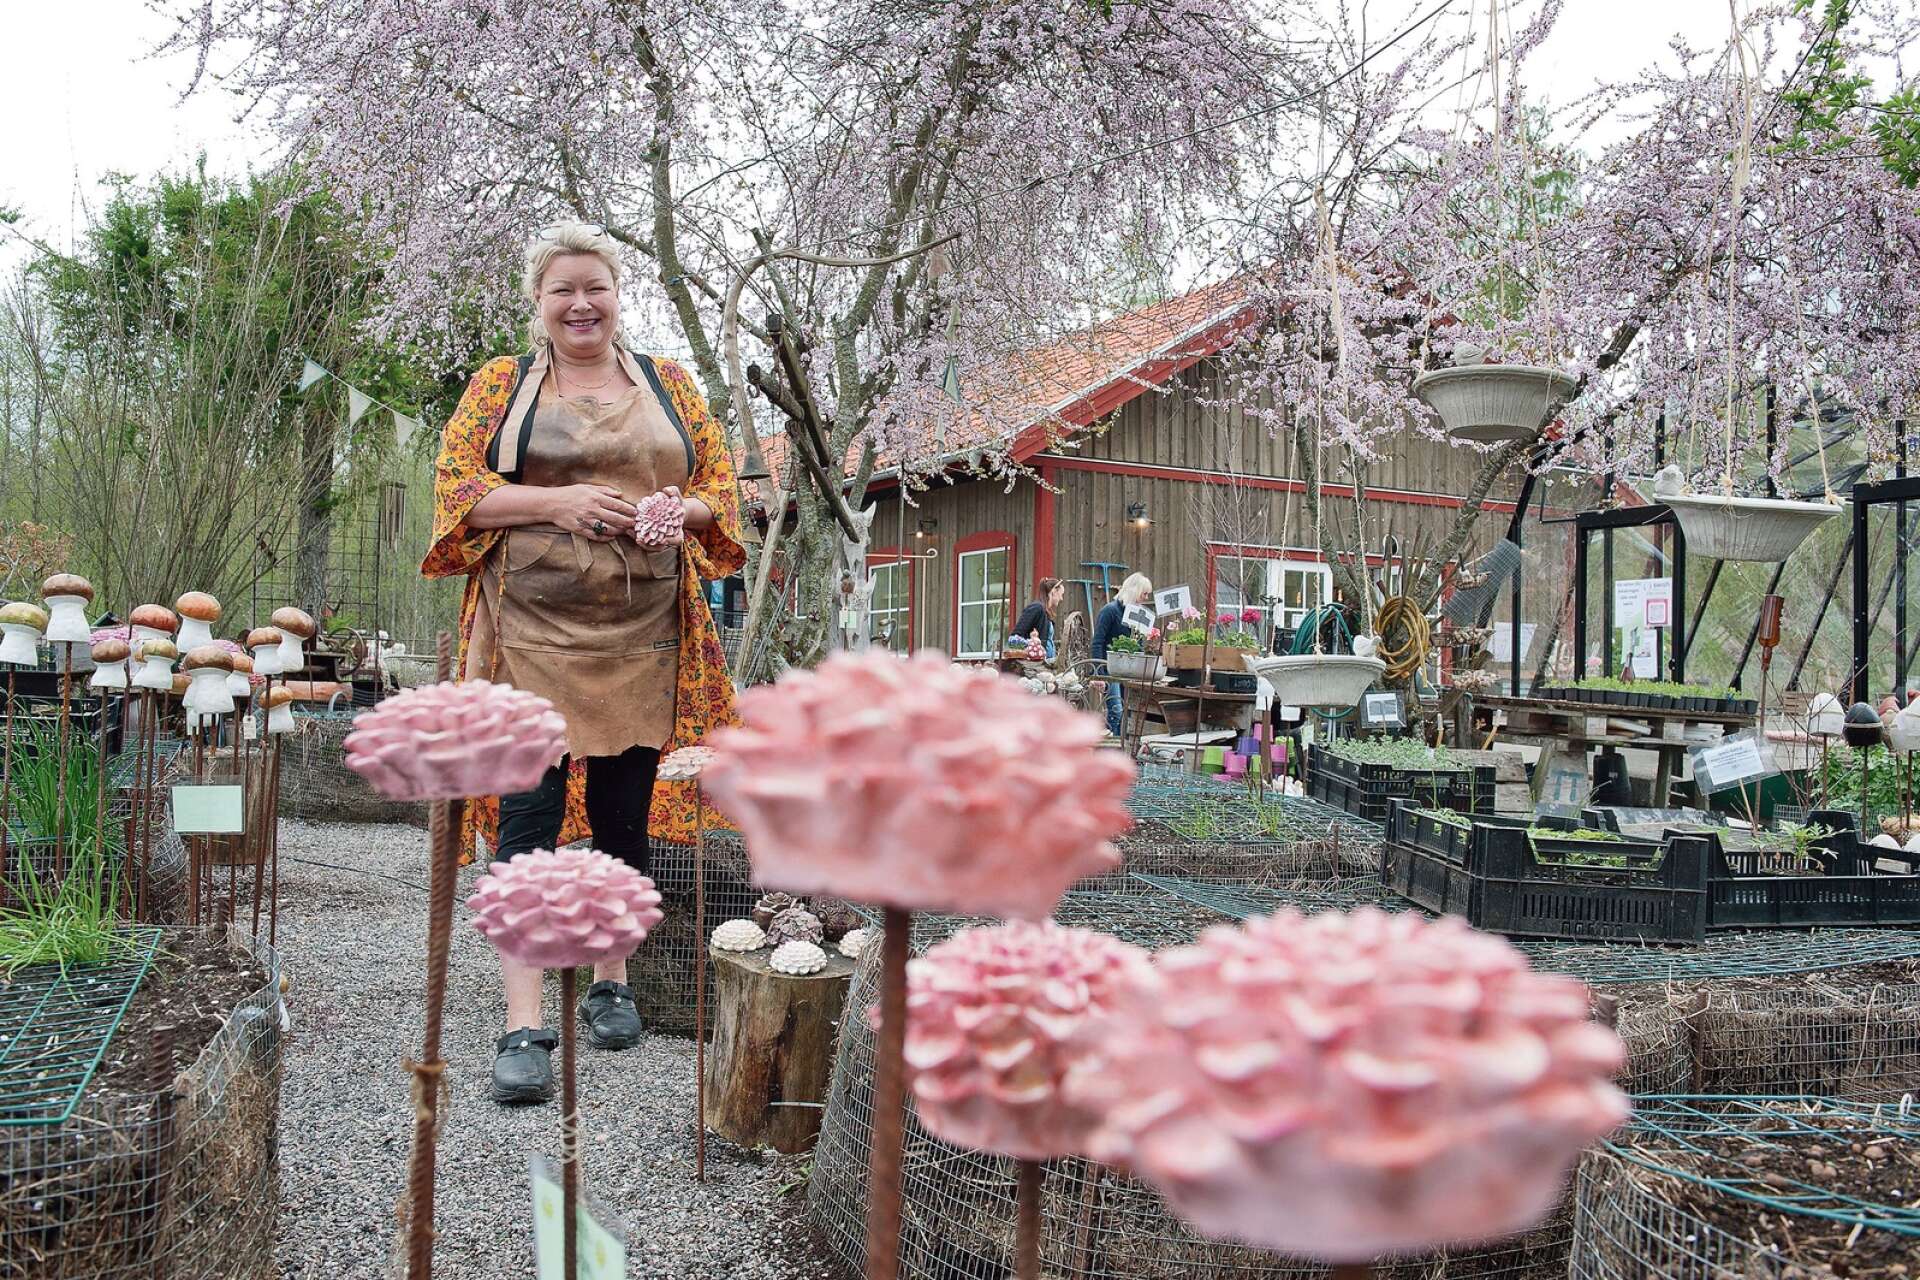 I PARADISET. Mitt i paradiset bland betonggjutna blommor, kycklingar och sina odlingar. trivs Helena Gustafsson Hedberg bäst. ”Blommorna i betong är det som säljer bäst på våren innan allt slår ut”, säger Helena.